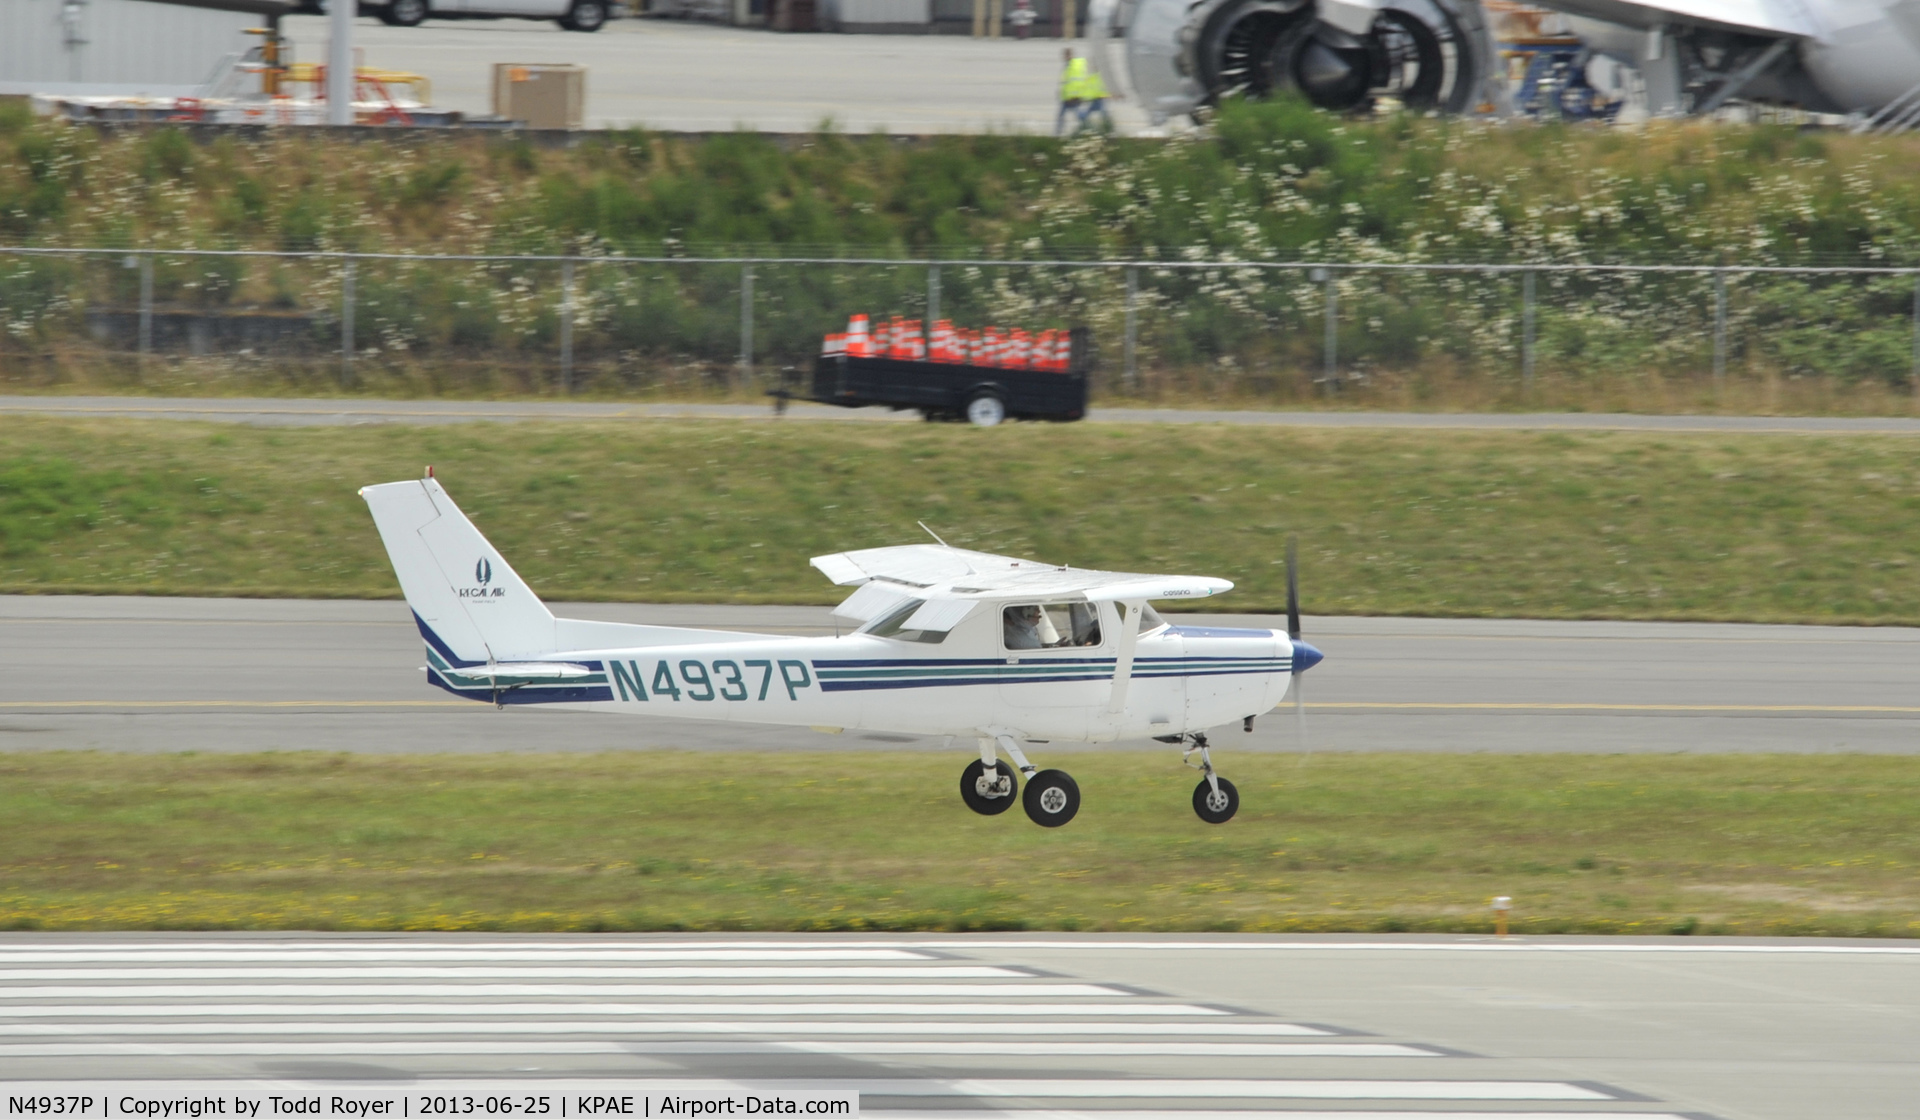 N4937P, 1981 Cessna 152 C/N 15284849, Landing at Paine Field